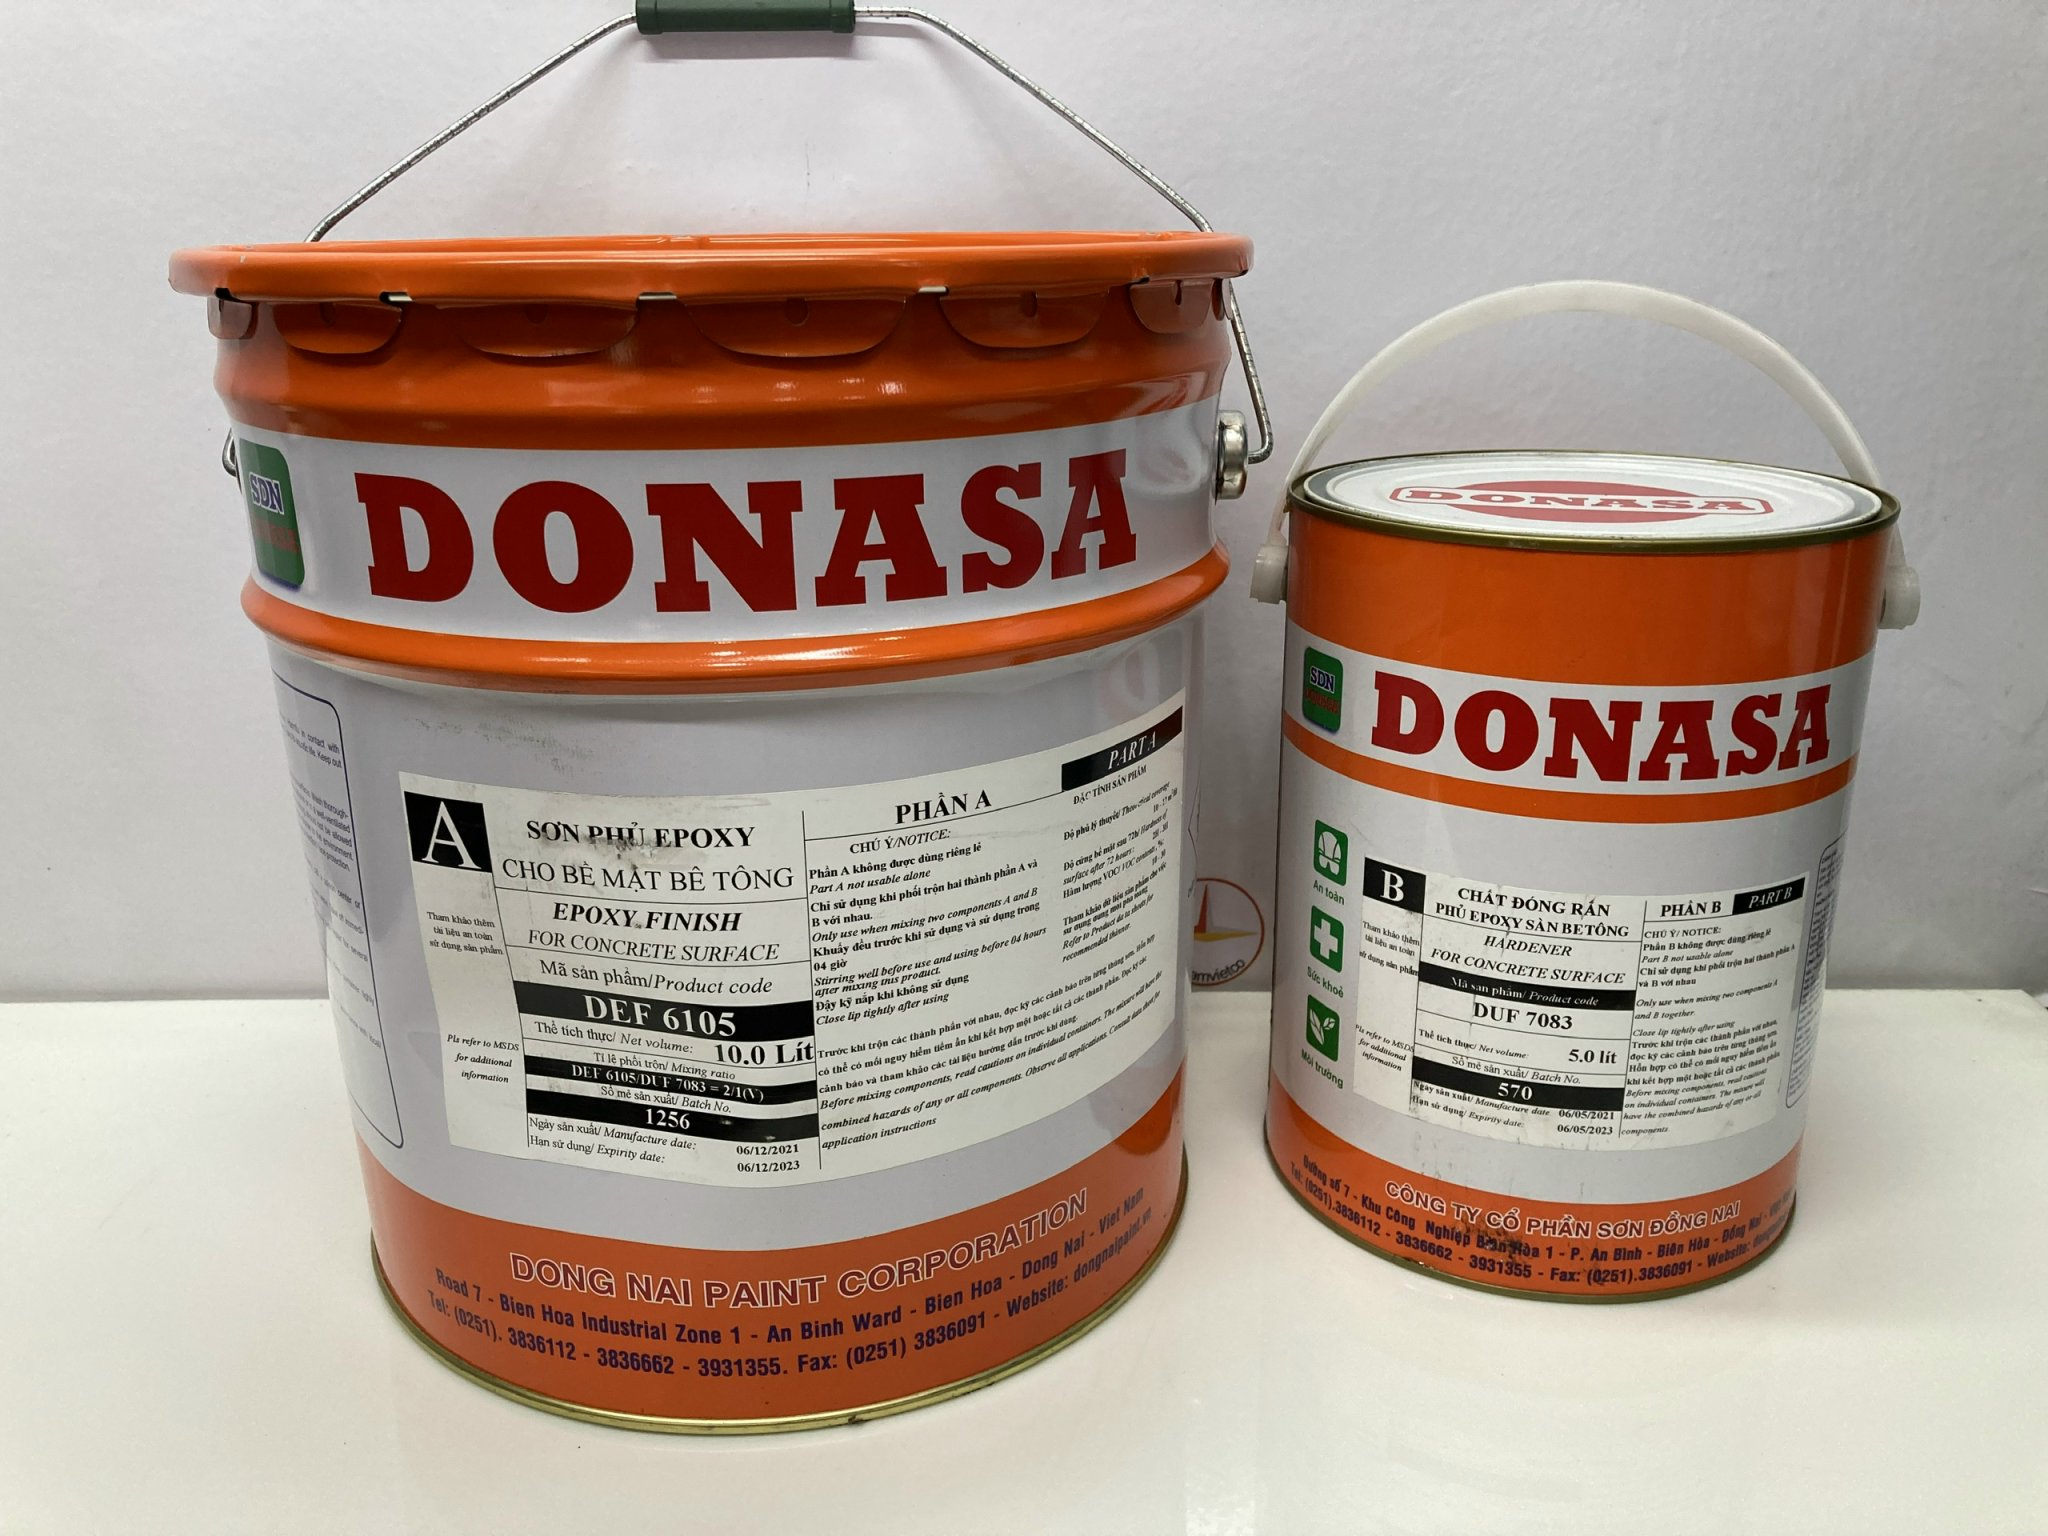 Sơn sàn bê tông Donasa /Floor coating Paint màu vàng DEF 6105 15L